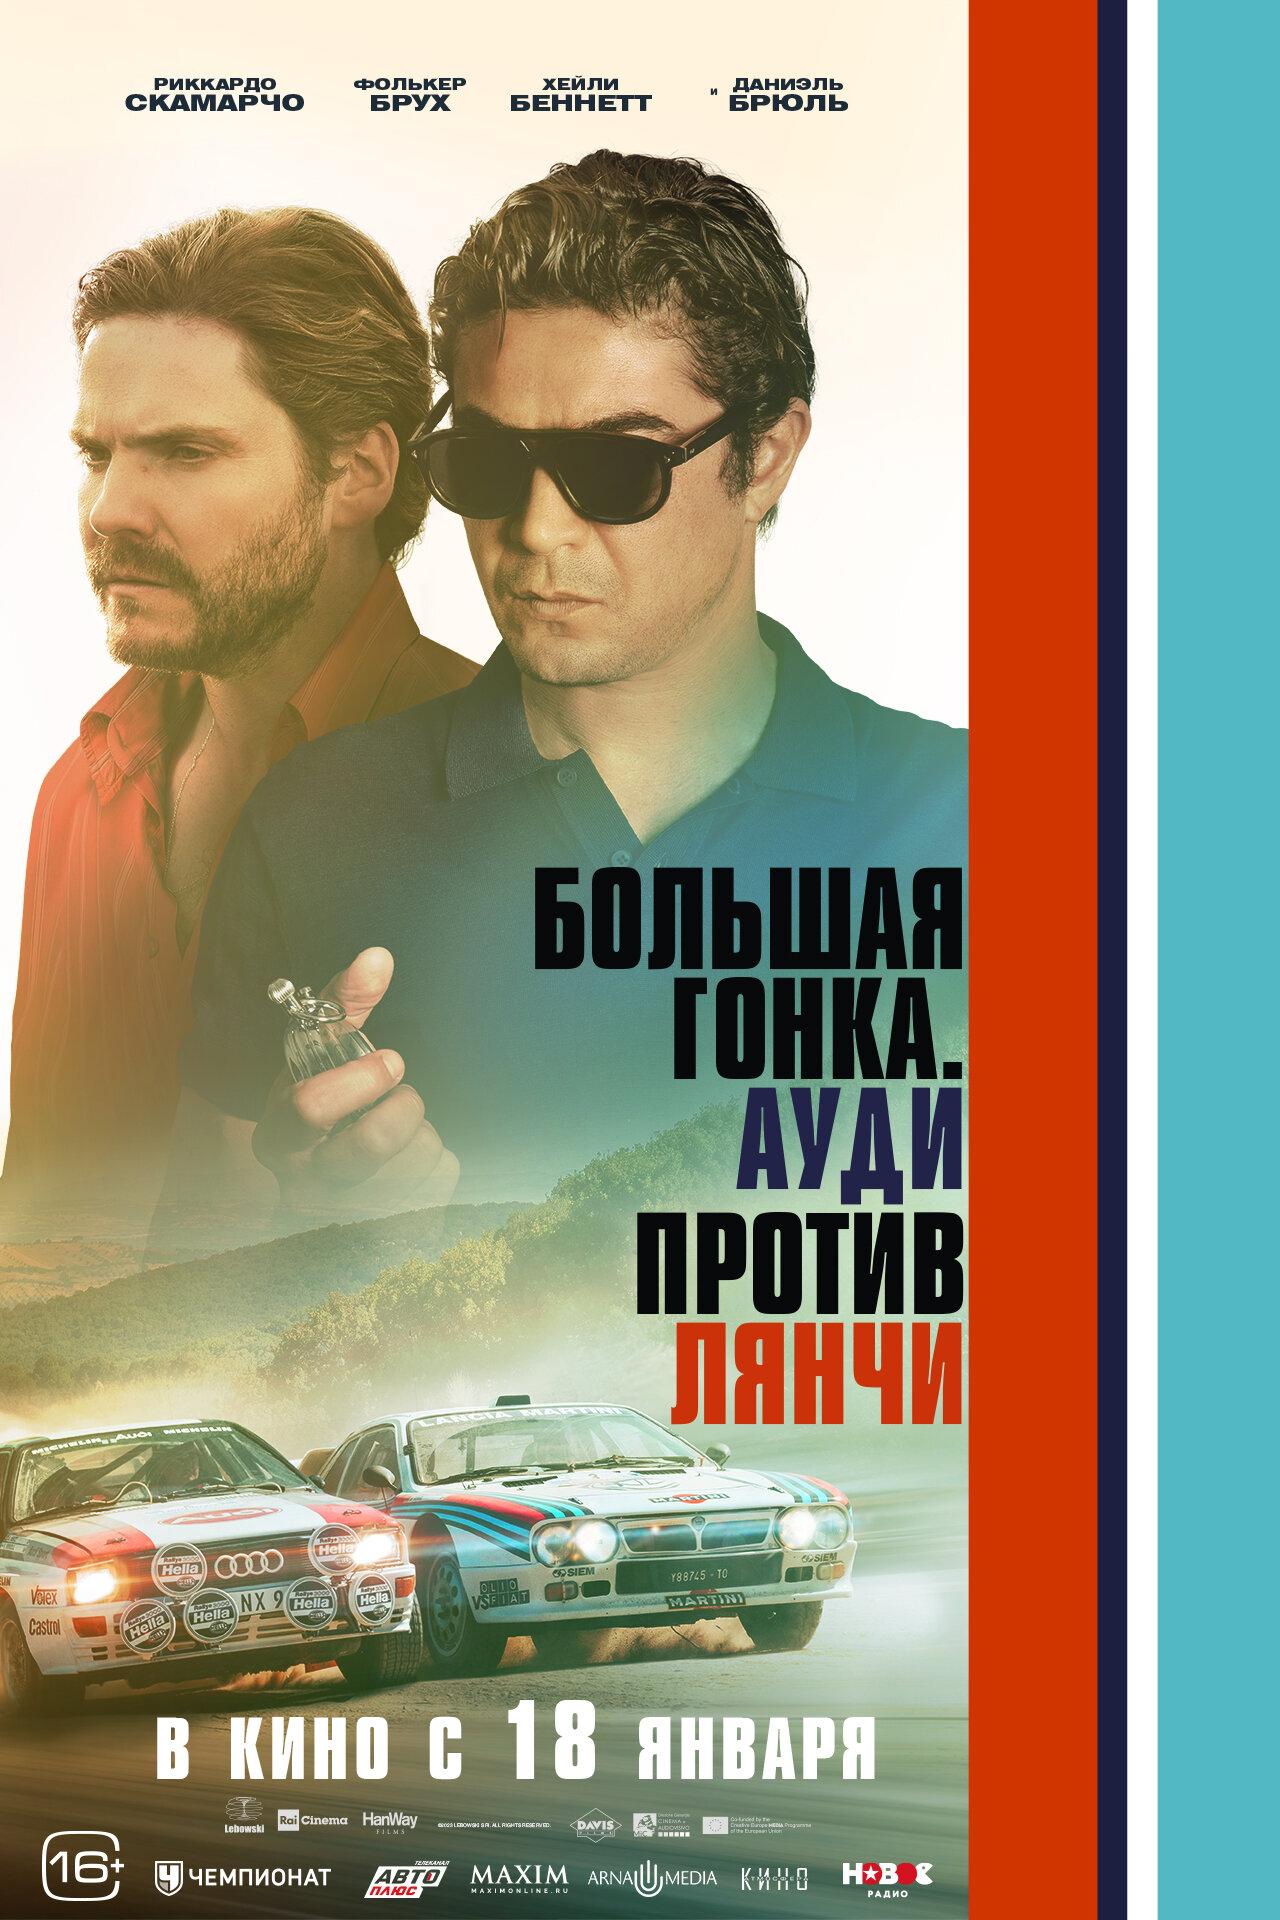 Постер фильма Большая гонка. Ауди против Лянчи | 2 Win